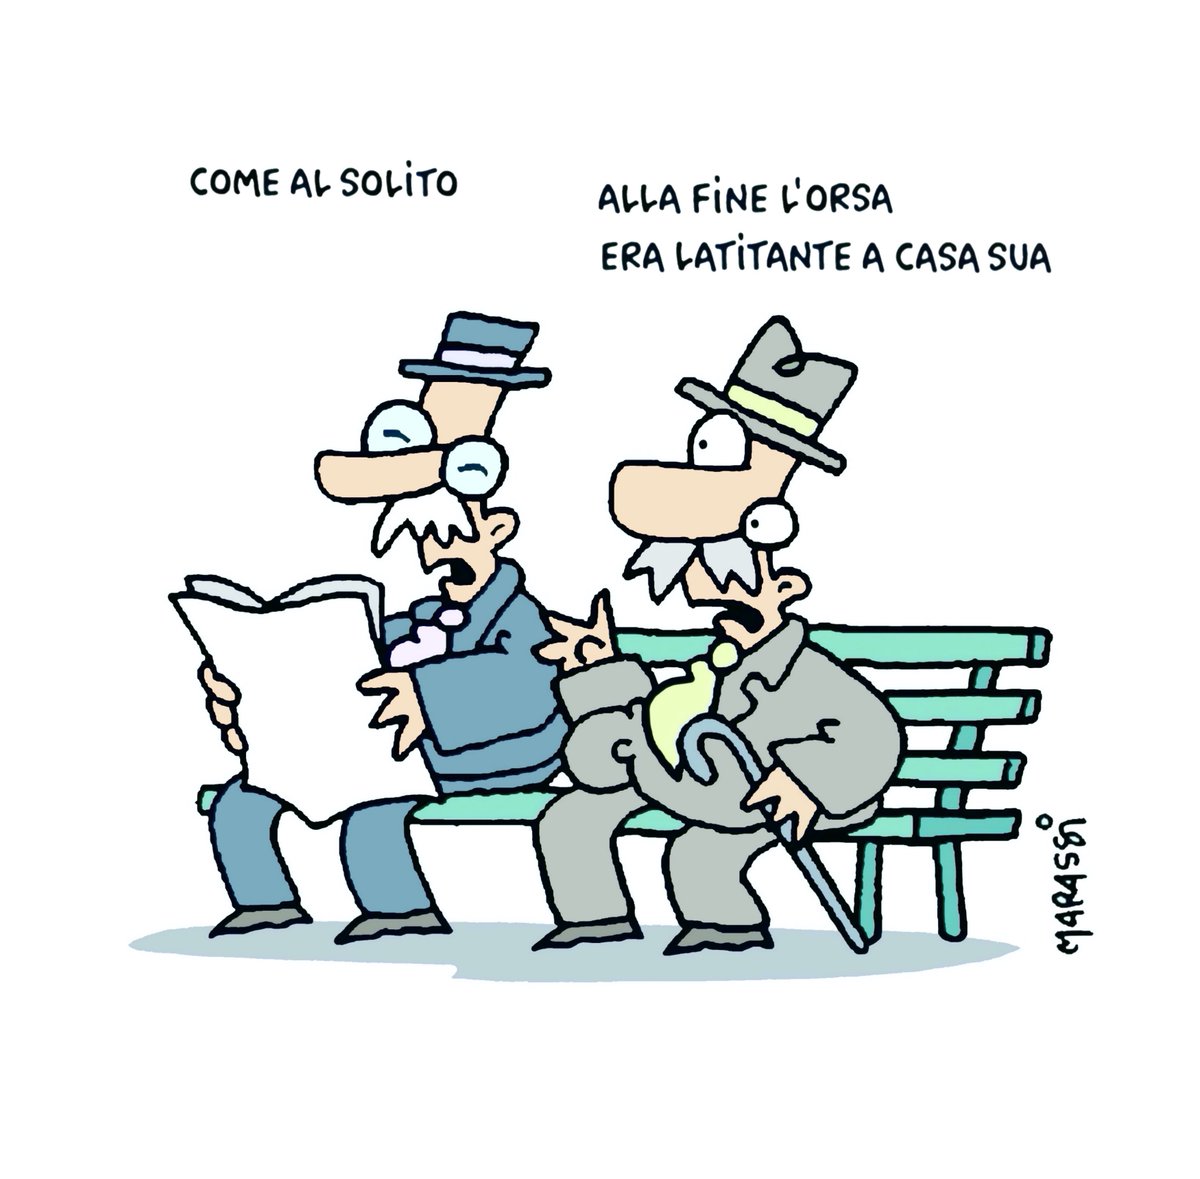 La vignetta di oggi sul Quotidiano del Sud quotidianodelsud.it #Orsa #OrsaJJ4 #OrsaCatturata #Trentino #TrentinoAltoAdige 
@riccardomarassi